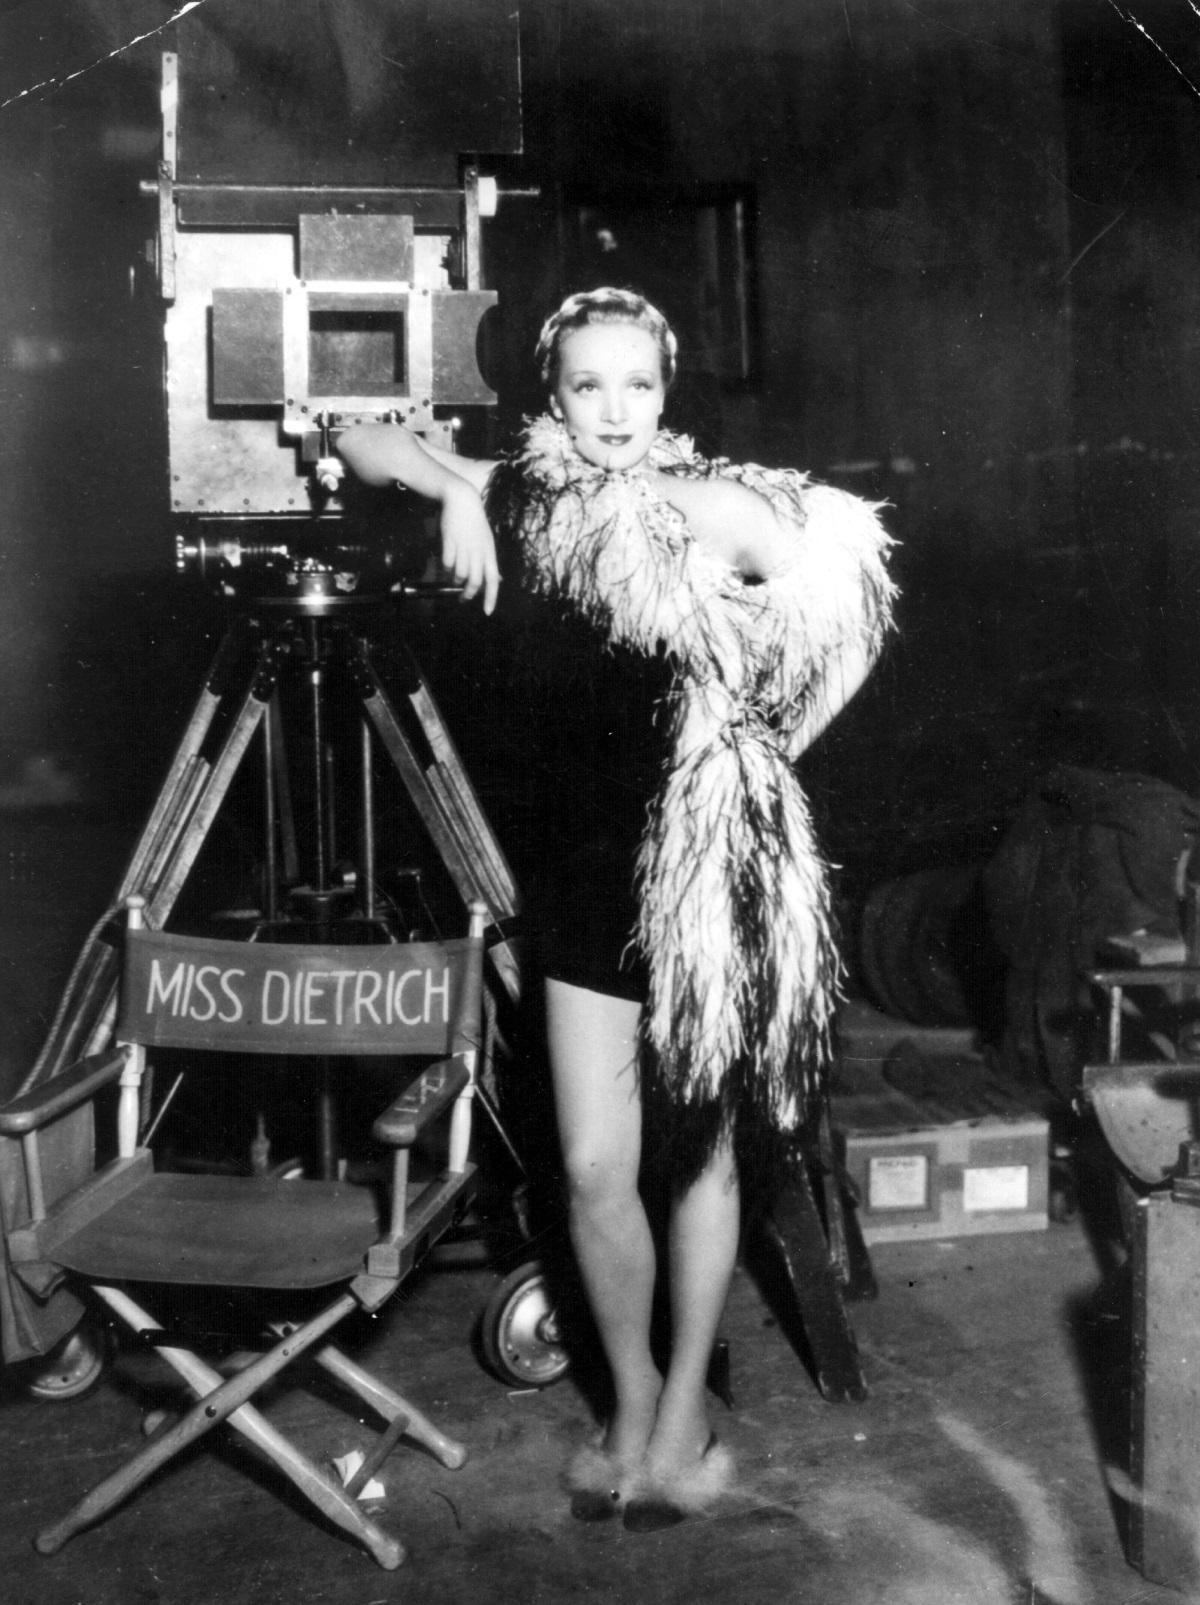 Марлене Дитрих става част от първата германска филмова продукция, в която се говори - "Синият ангел" от 1930 г. Във филма Марлене се превъплъщава в кабаретна певица и танцьорка и става звезда в САЩ